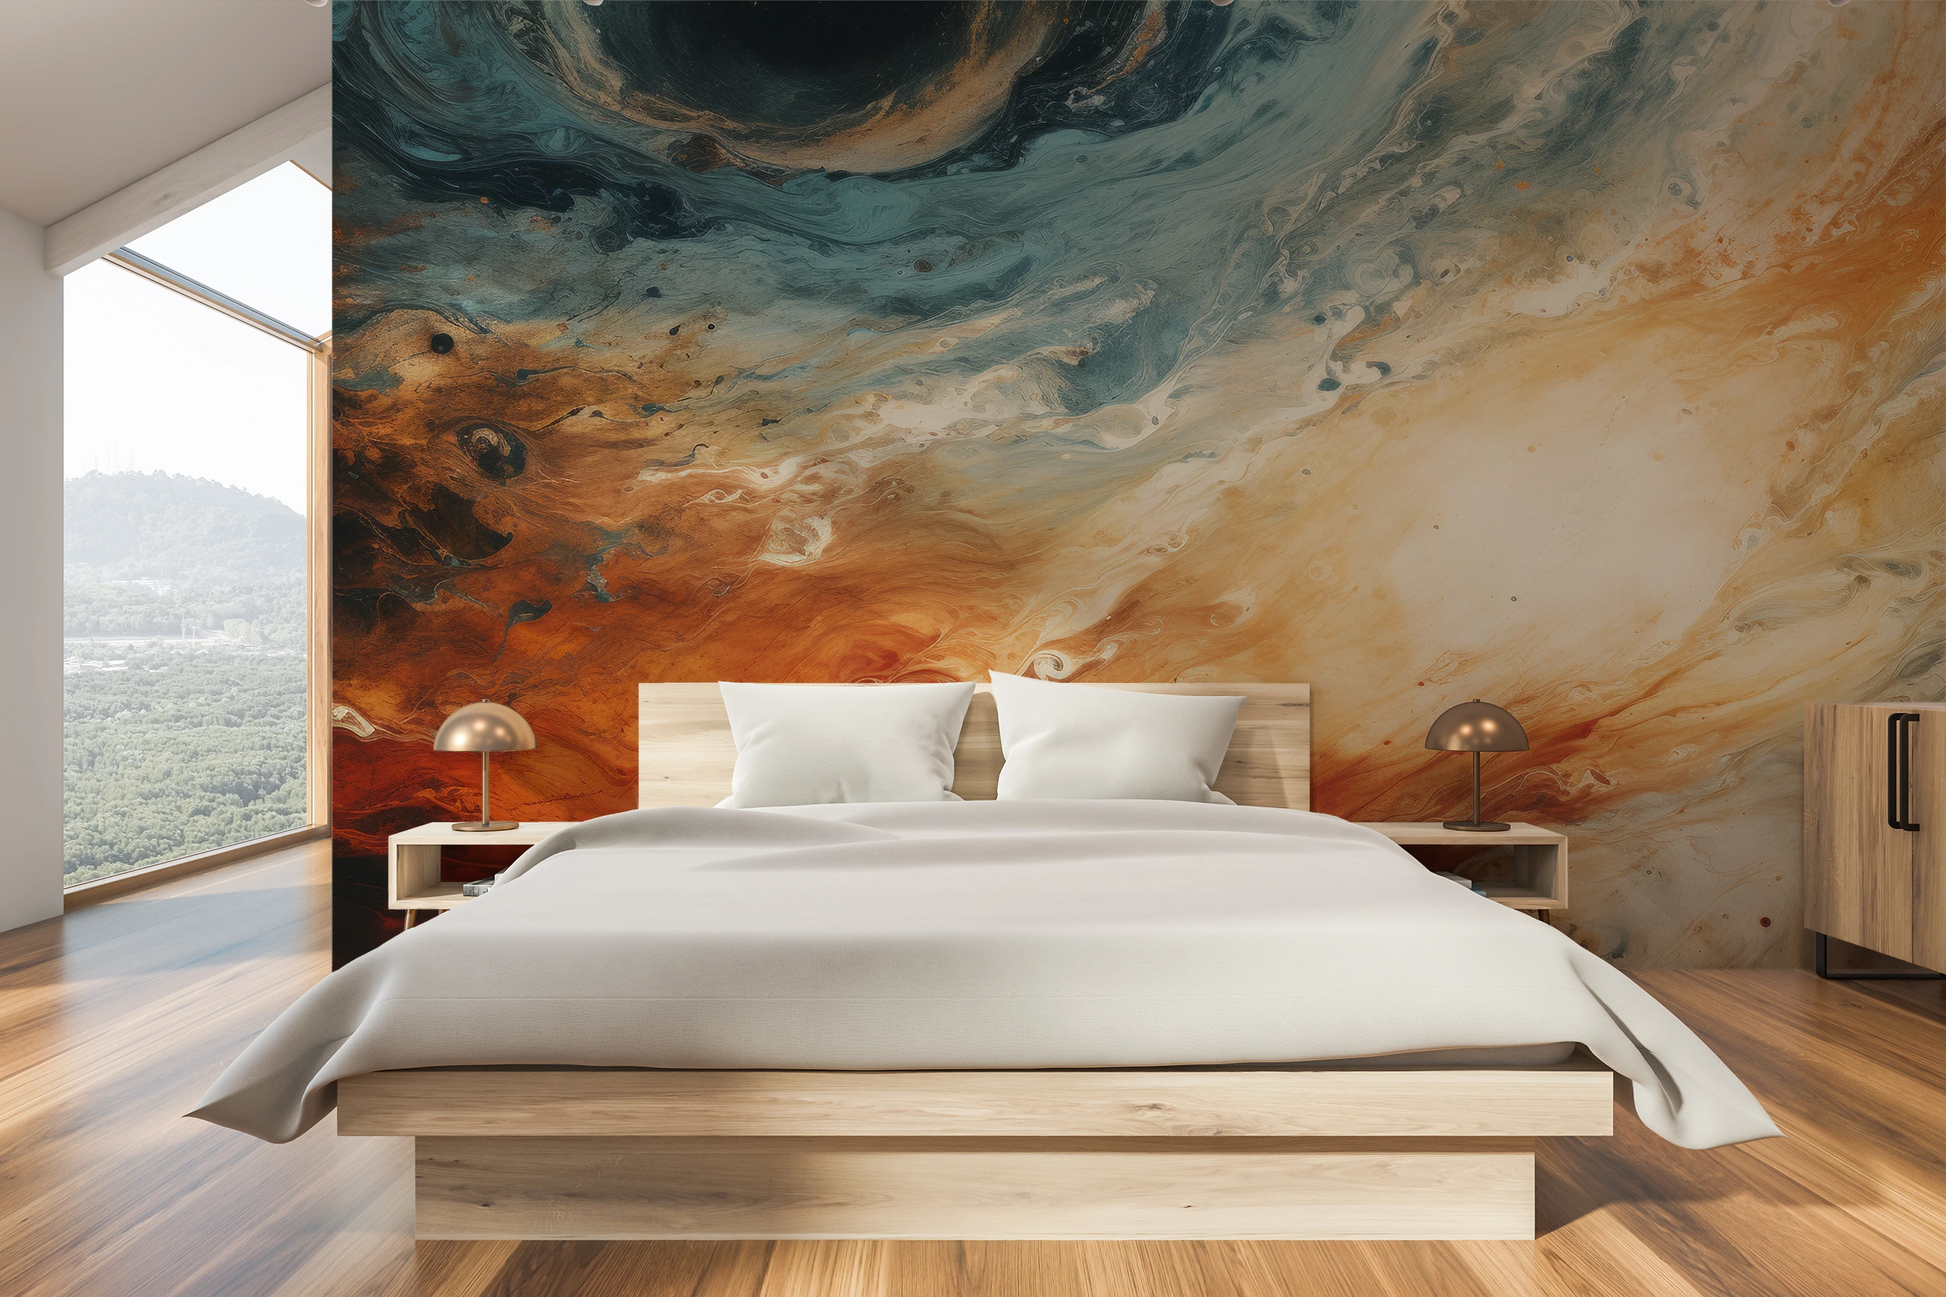 Wzór fototapety malowanej o nazwie Jovian Storm pokazanej w aranżacji wnętrza.